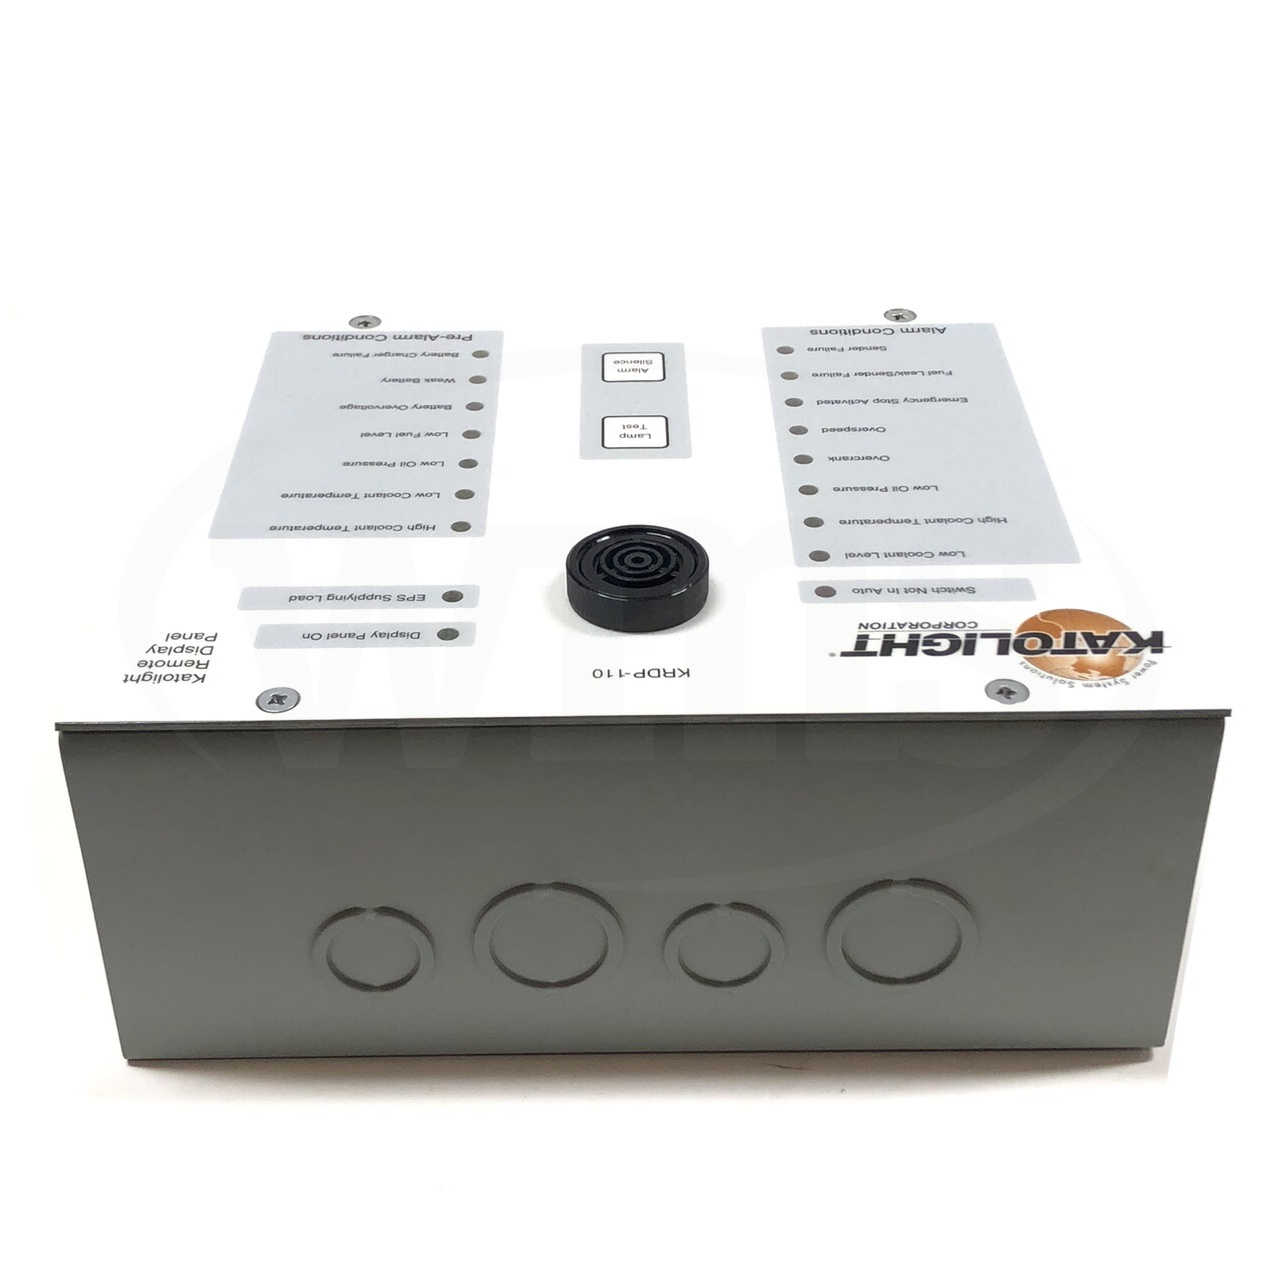 KRDP-110 Basler Katolight Alarm Remote Display Panel 3